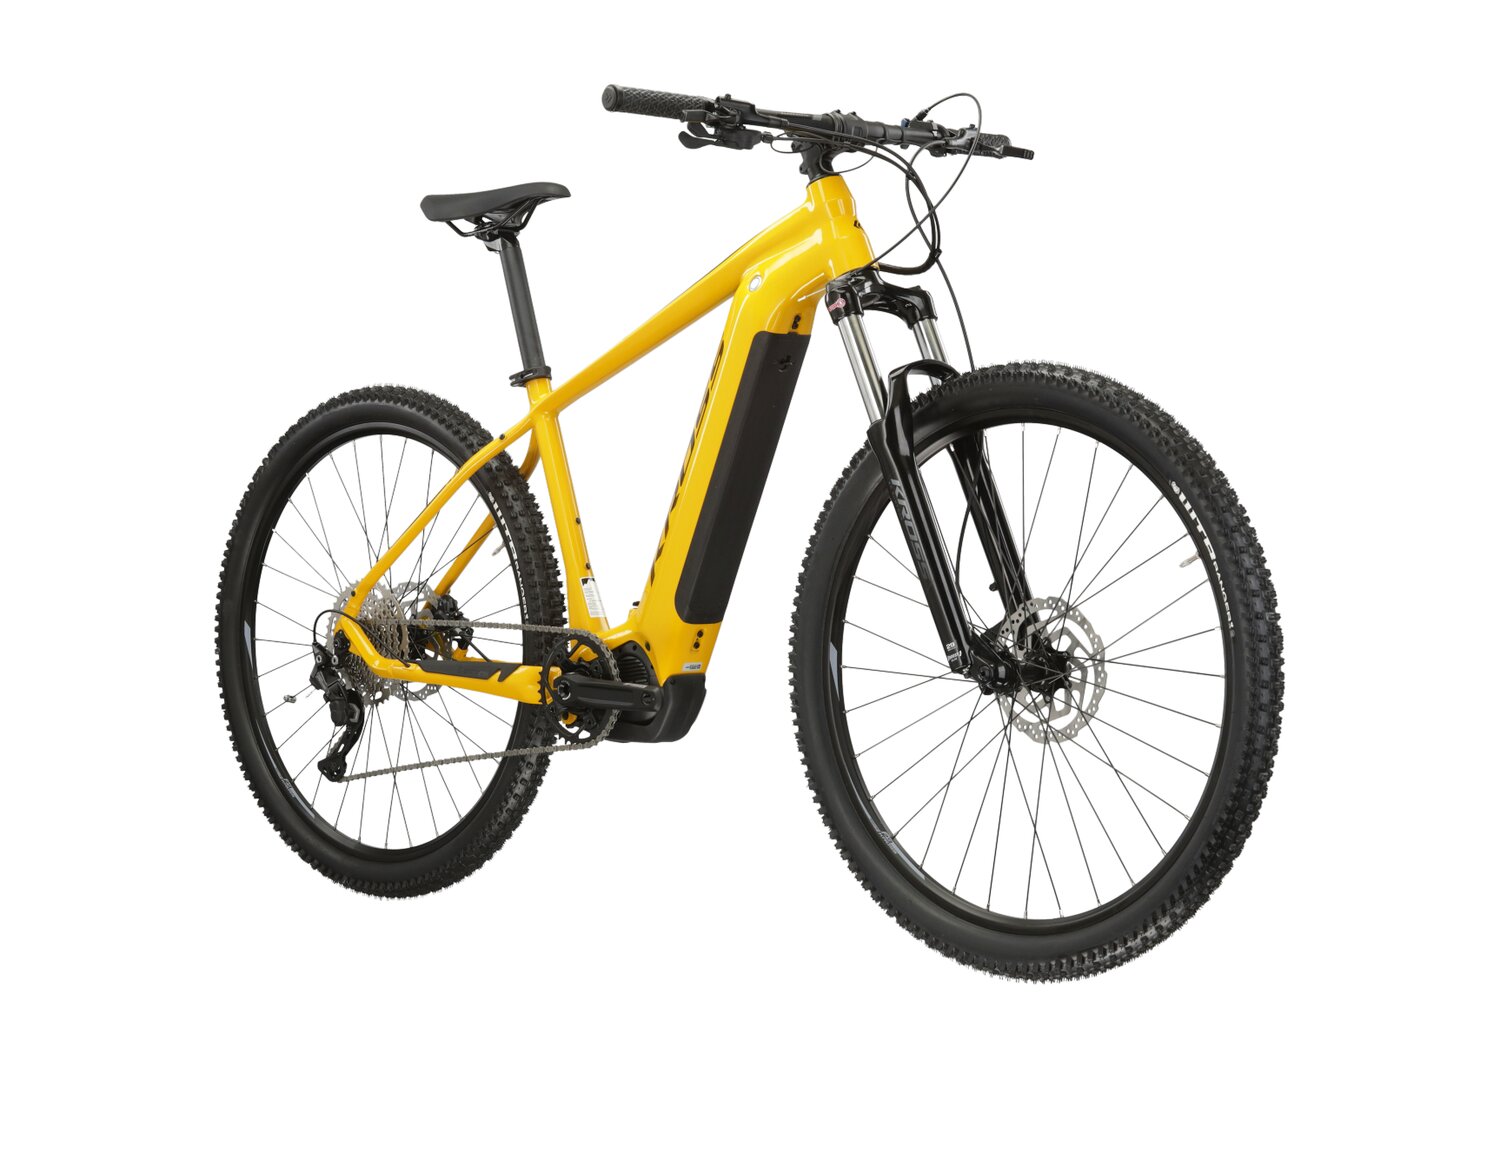  Elektryczny rower górski Ebike MTB XC KROSS Level Boost 1.0 500 Wh na aluminiowej ramie w kolorze żółtym wyposażony w osprzęt Shimano i napęd elektryczny Shimano 